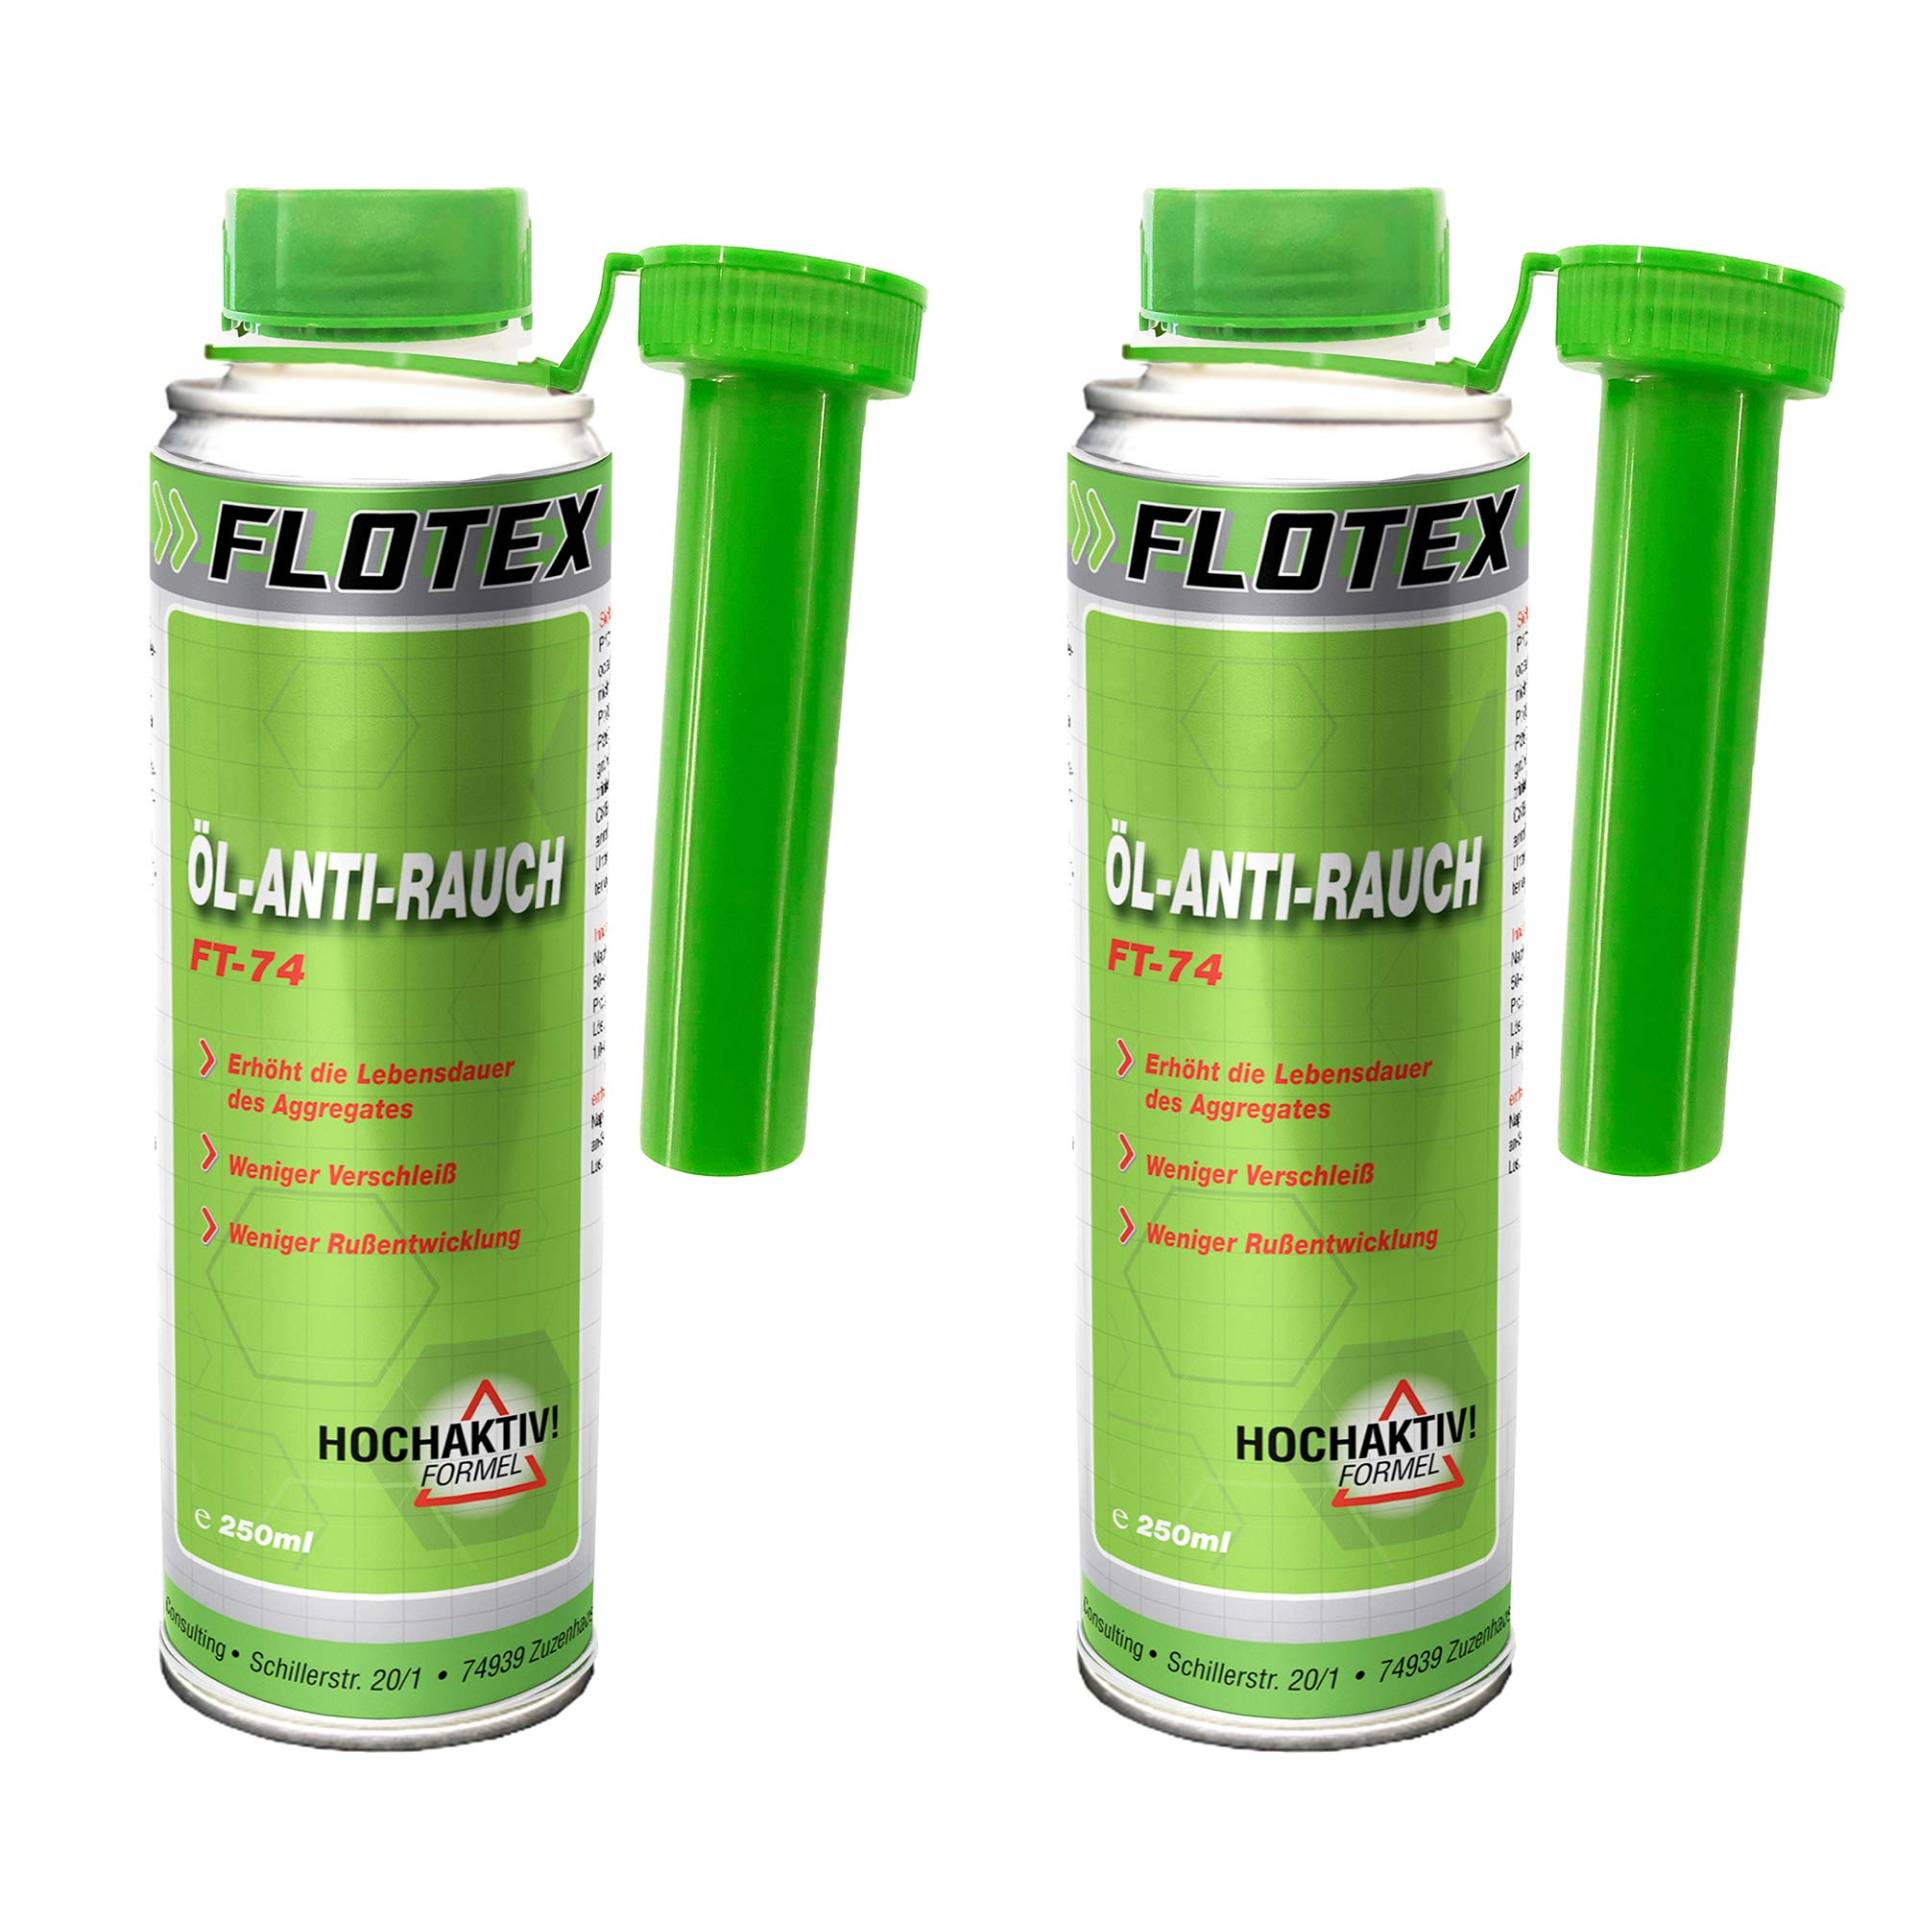 Flotex Öl Anti Rauch, 2 x 250ml Additiv reduziert Verschleiß und Rußentwicklung von Flotex